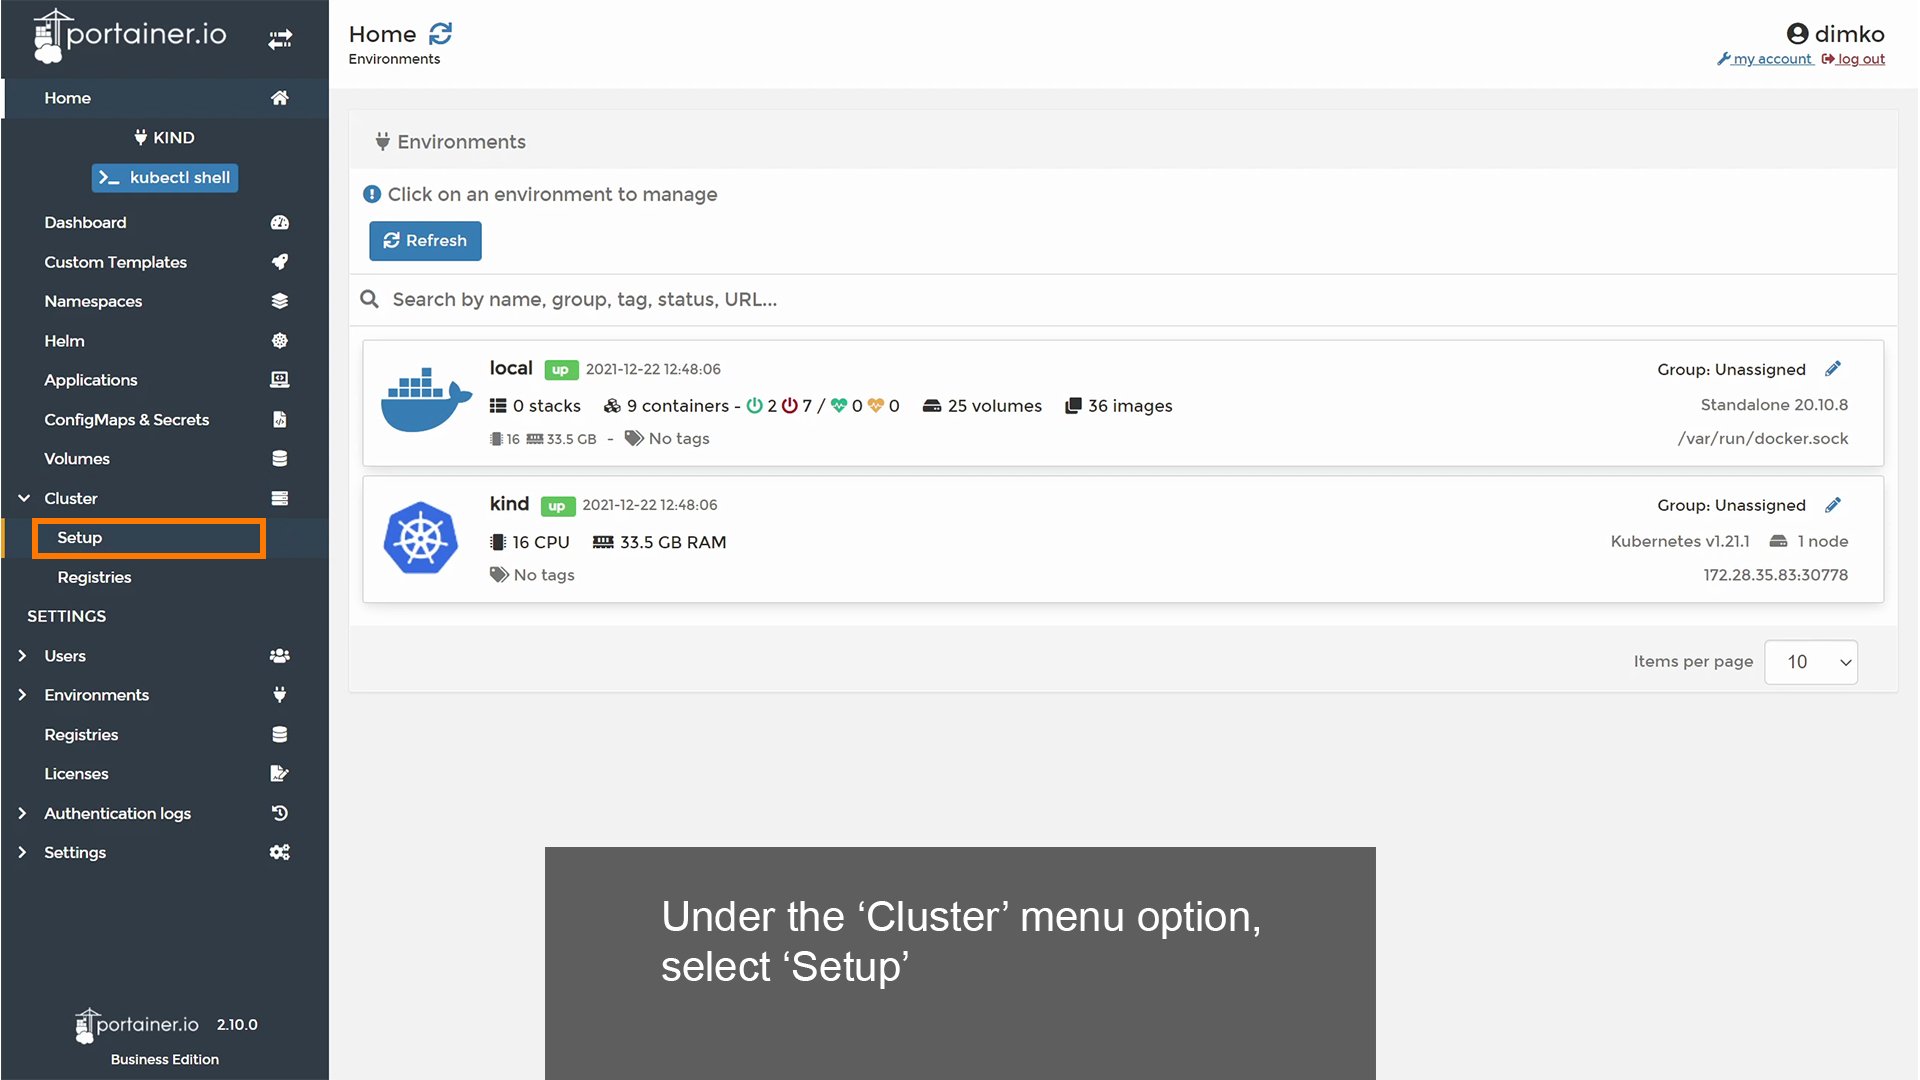 Under Cluster, select 'Setup'